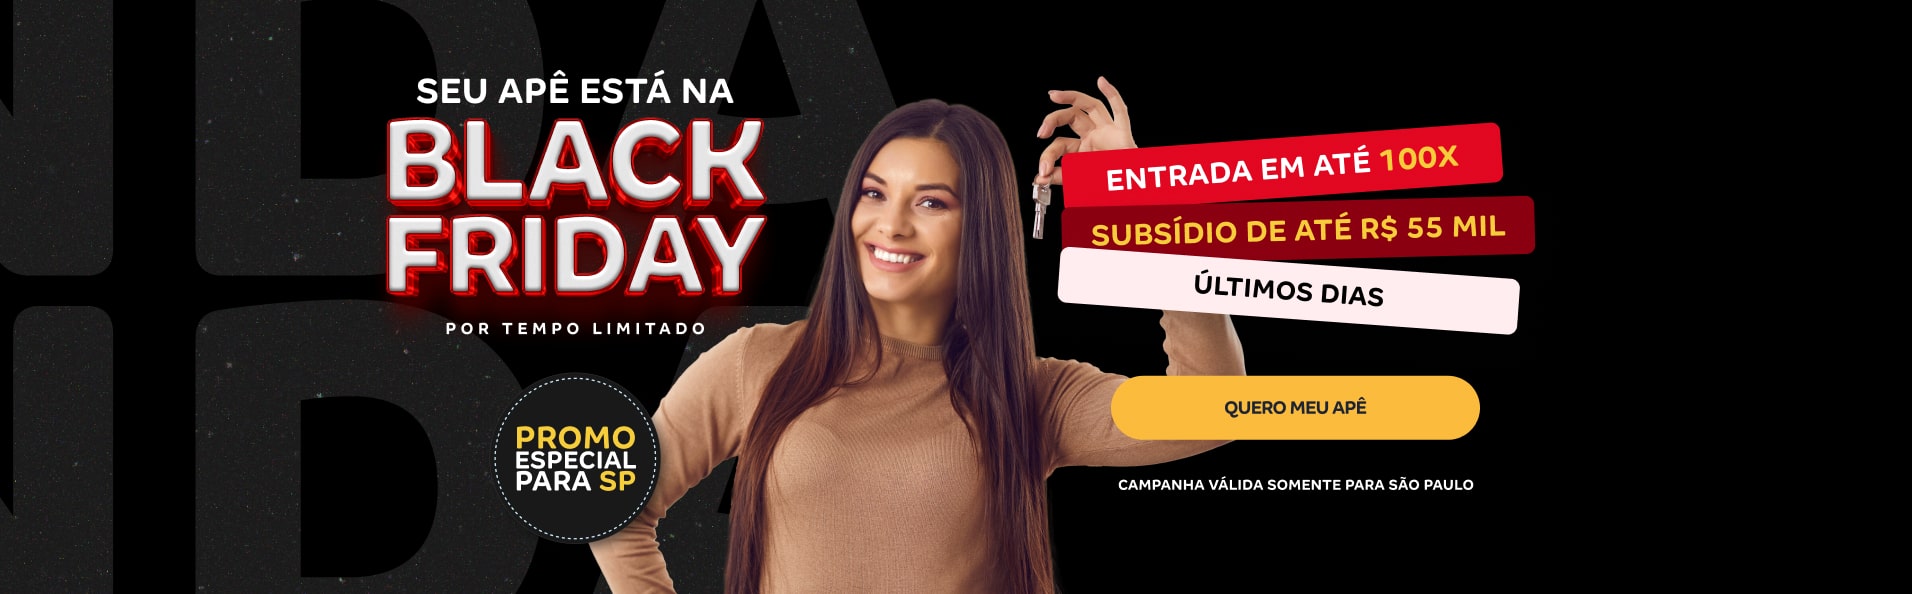 Confira a promoção de Black Friday da Construtora Tenda, em São Paulo.